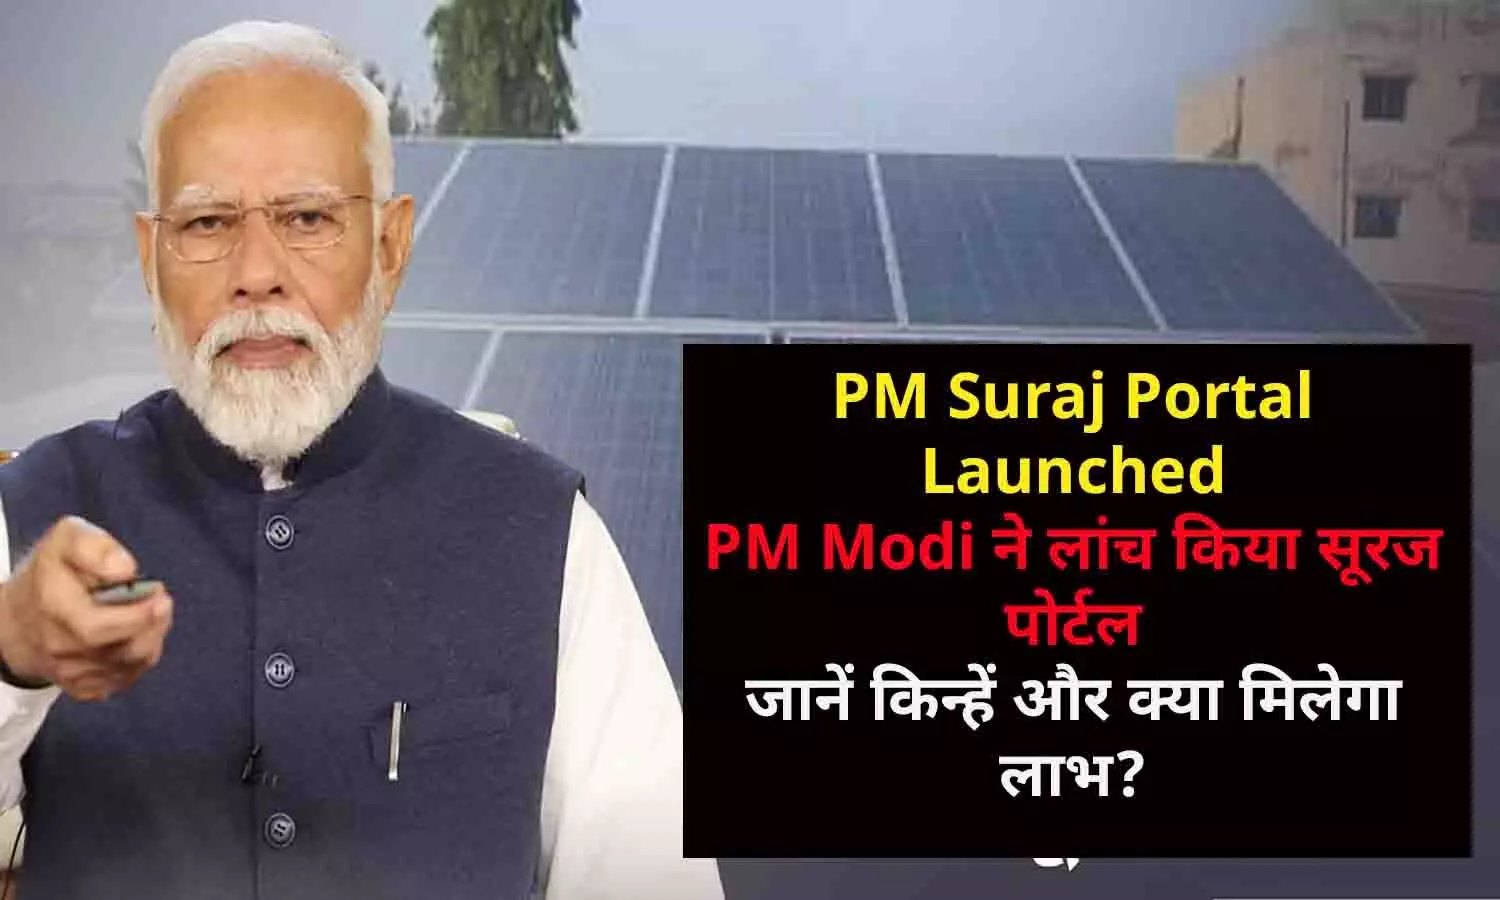 PM Suraj Portal Launched: PM Modi ने लांच किया सूरज पोर्टल, जानें किन्हें और क्या मिलेगा लाभ?